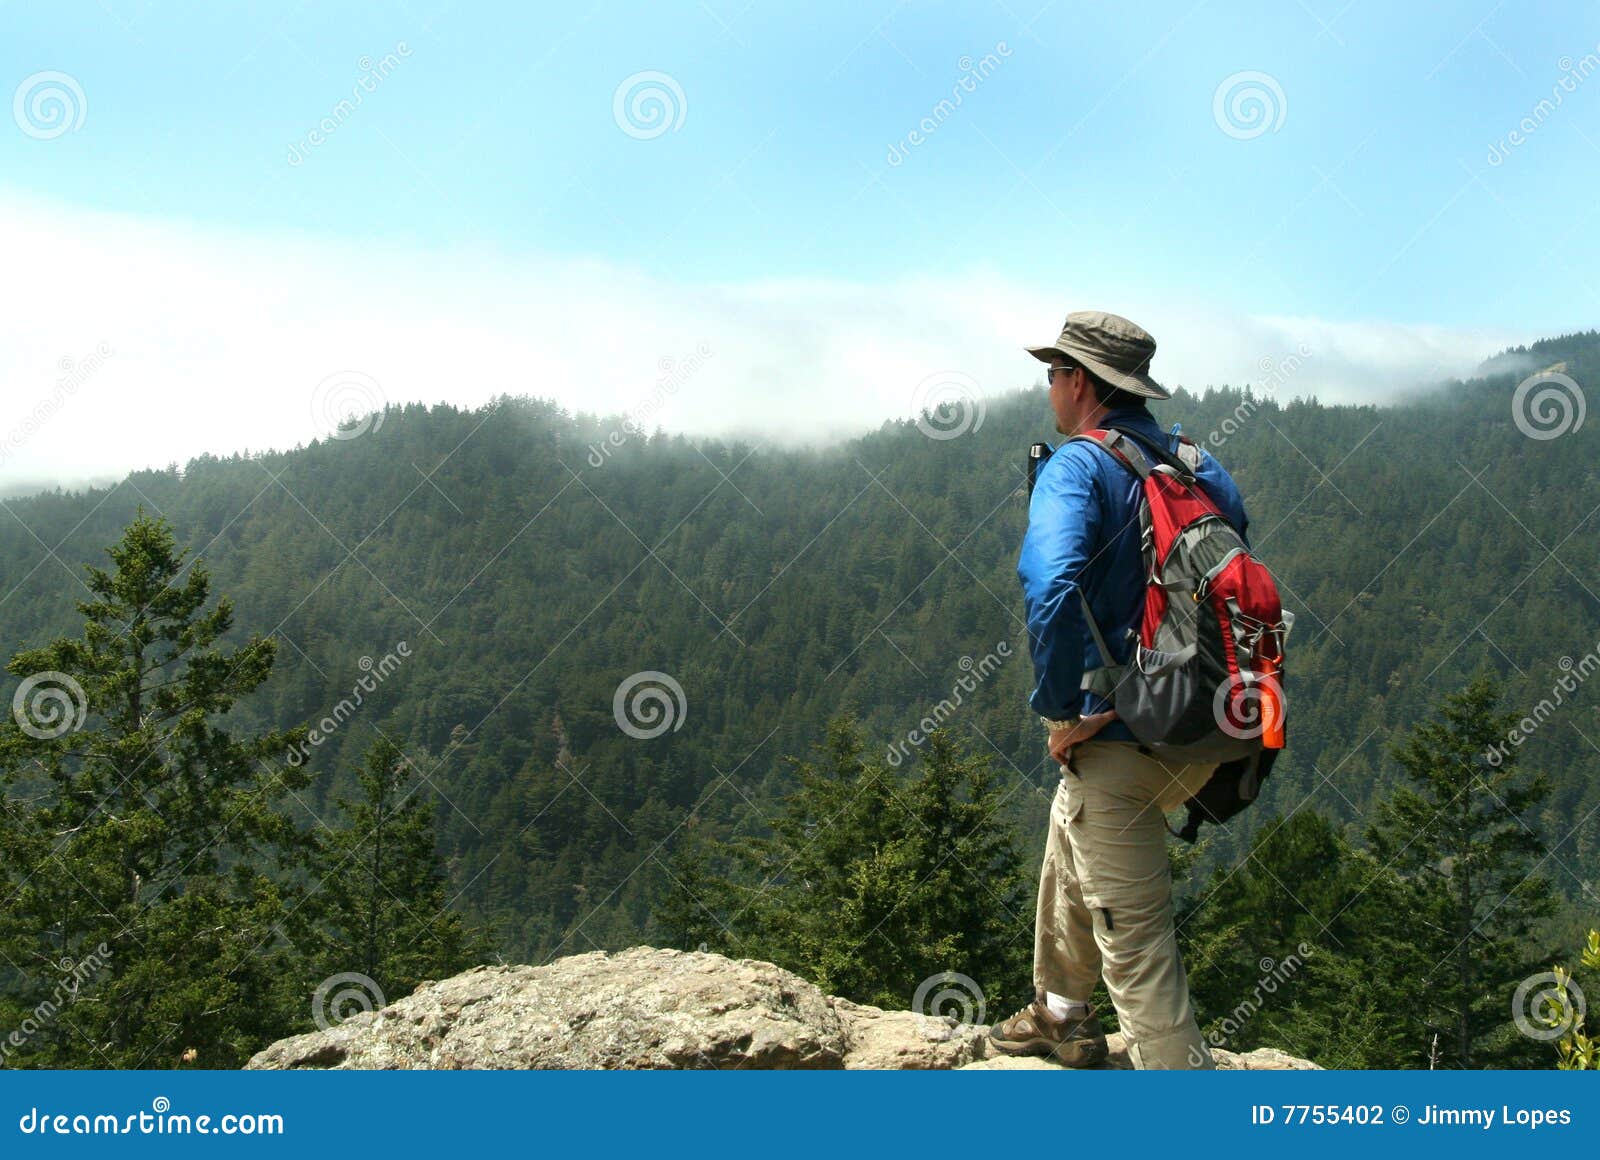 hiker on top of a peak